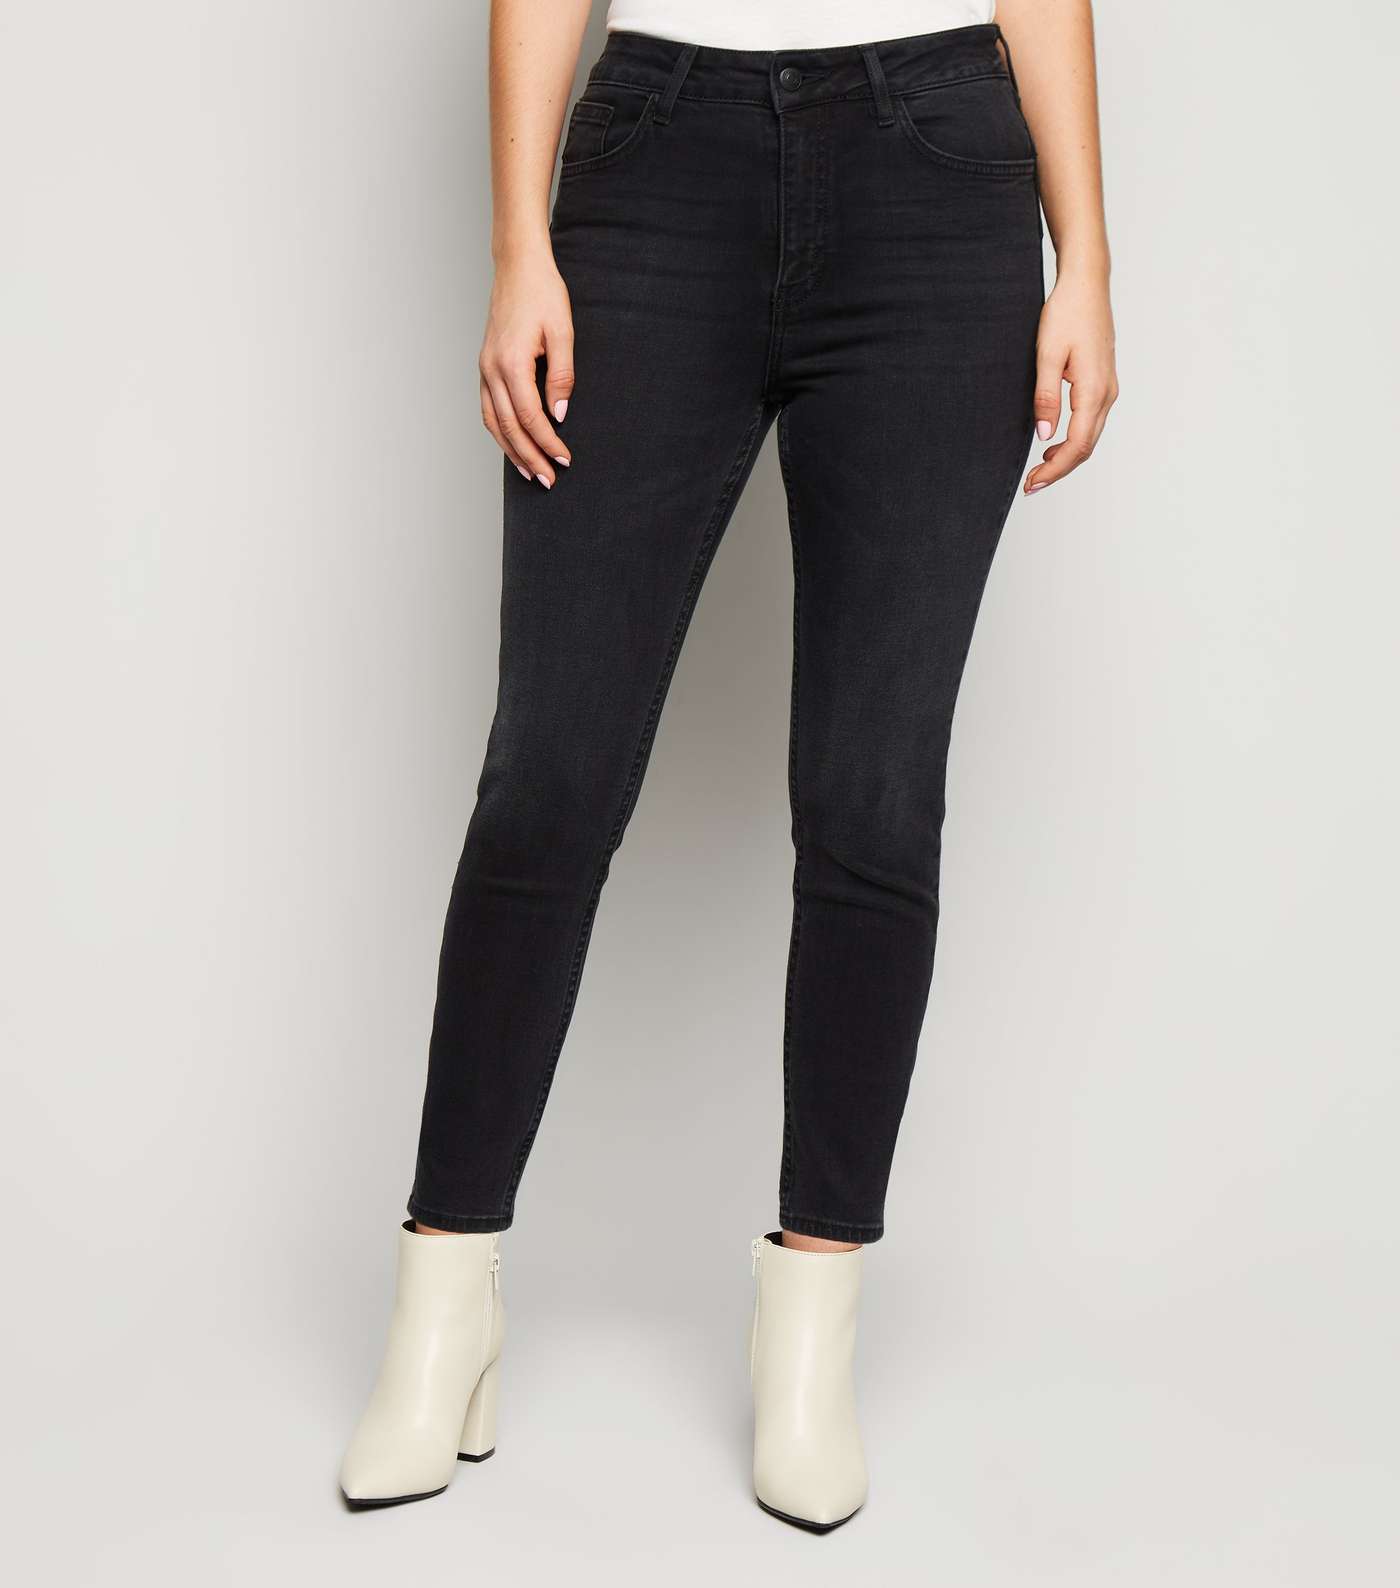 Petite Black 'Lift & Shape' Skinny Jeans Image 2